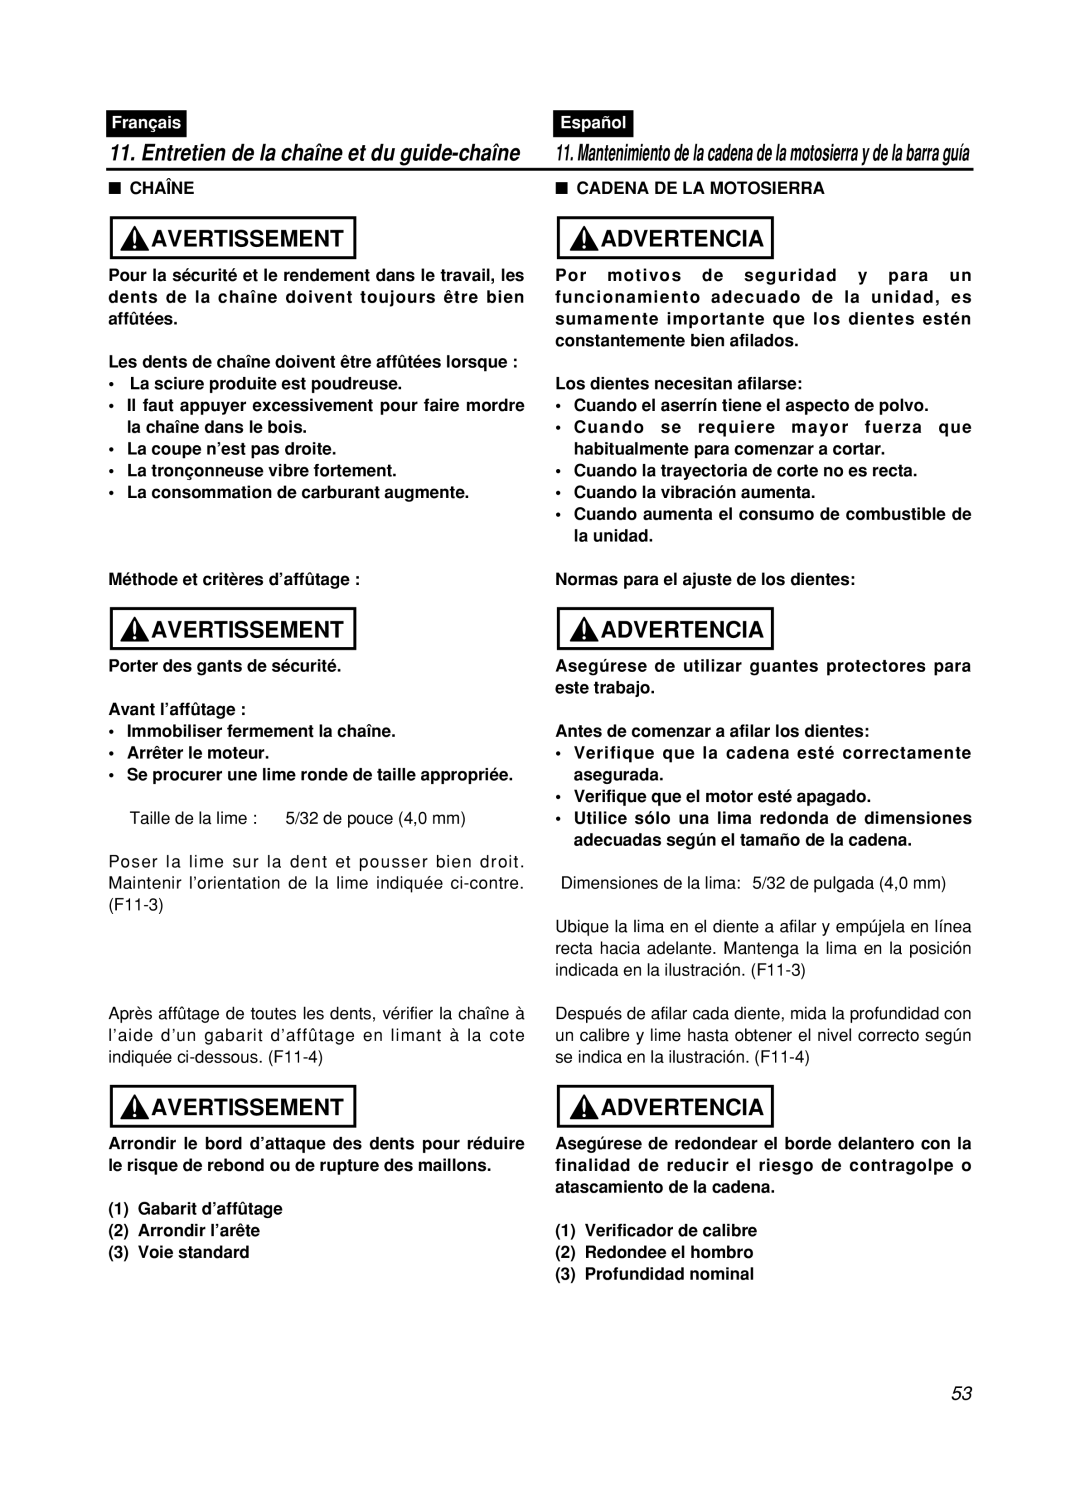 Zenoah GZ400 manual Entretien de la chaîne et du guide-chaîne, Avertissement, Advertencia, Français, Español, Chaîne 